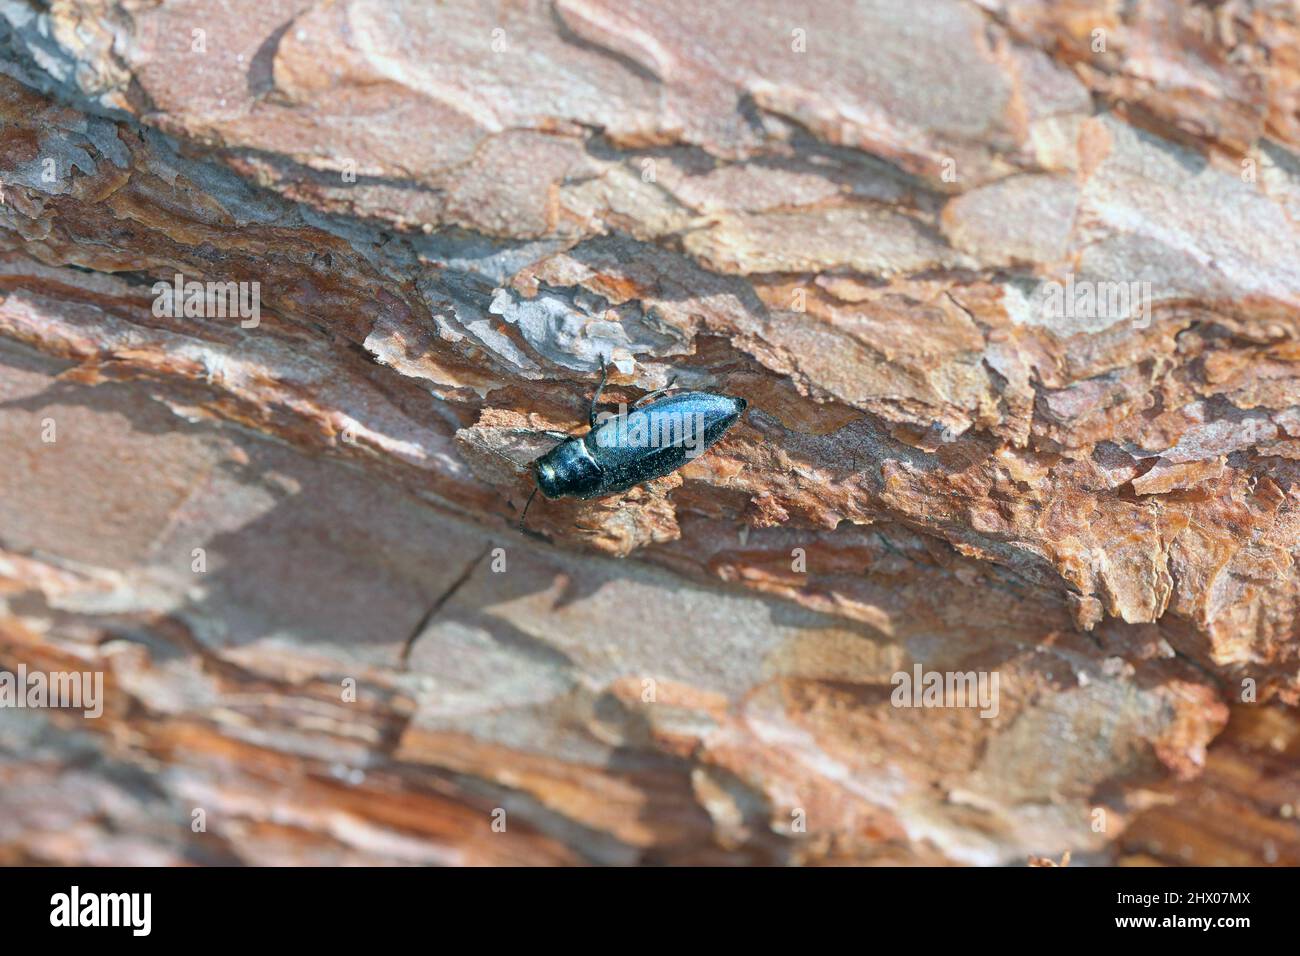 Stahlblauer Edelkäfer Phaenops cyanea auf Kiefernrinde. Es ist ein Pest von Kiefern aus der Familie Buprestidae, bekannt als Edelkäfer oder metallische Holzbohrer Stockfoto